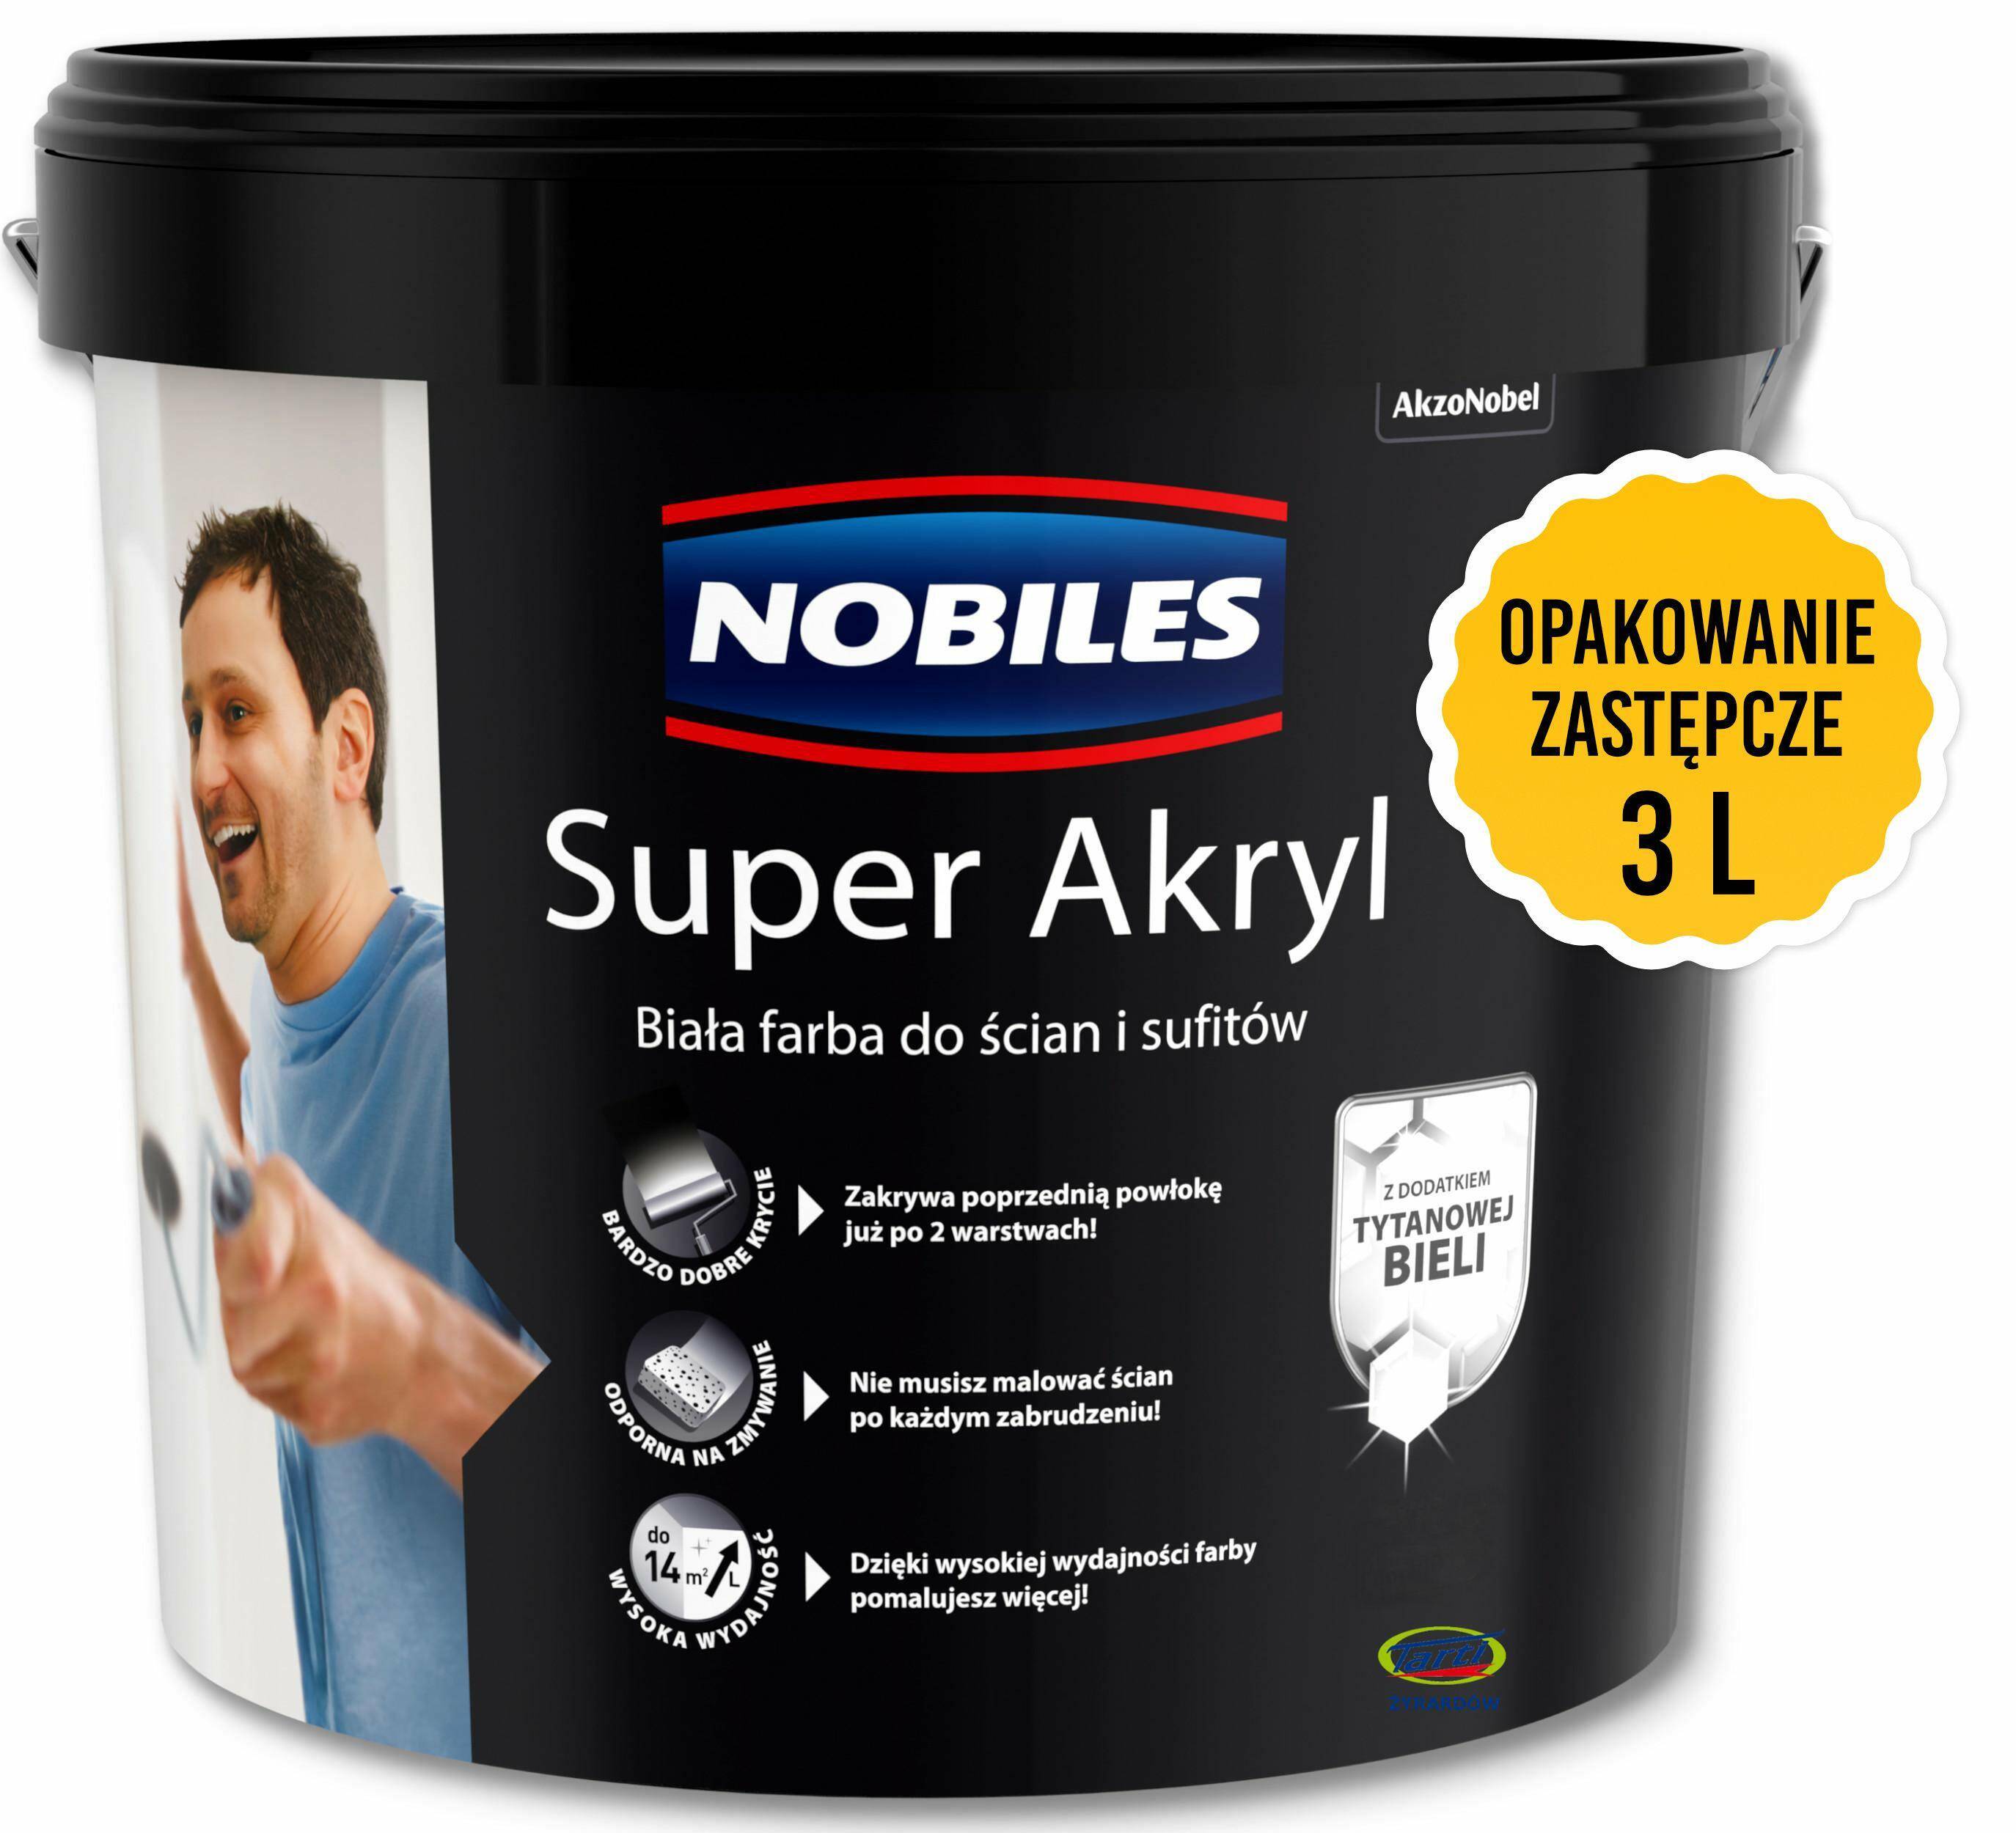 Opakowanie zastępcze Nobiles SUPER AKRYL